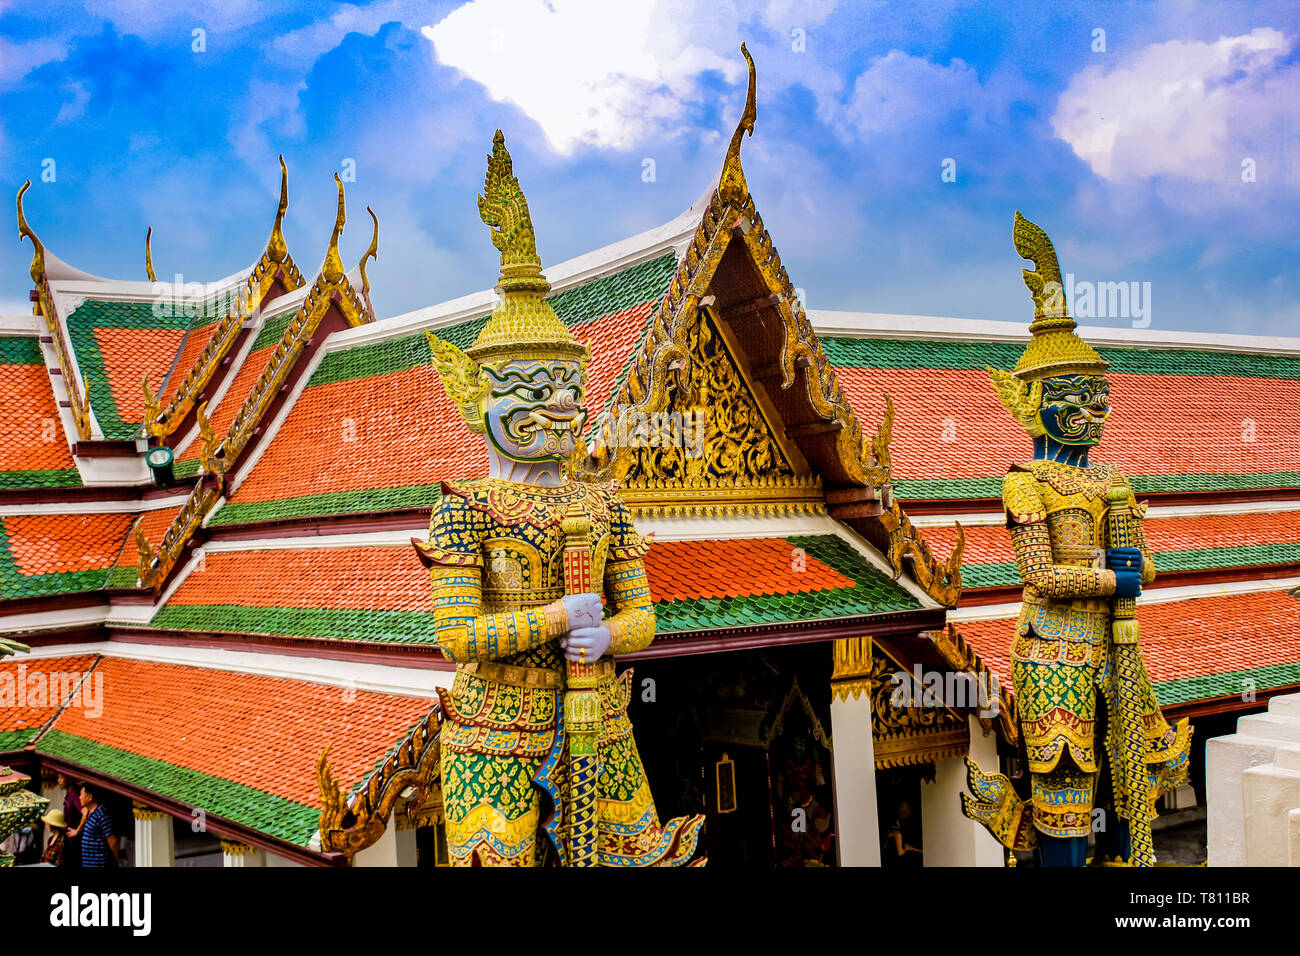 Dettaglio del Guardian statue, Grand Palace e il Wat Phra Kaew (il Tempio del Buddha di Smeraldo) complessi, Bangkok, Thailandia, Sud-est asiatico, in Asia Foto Stock